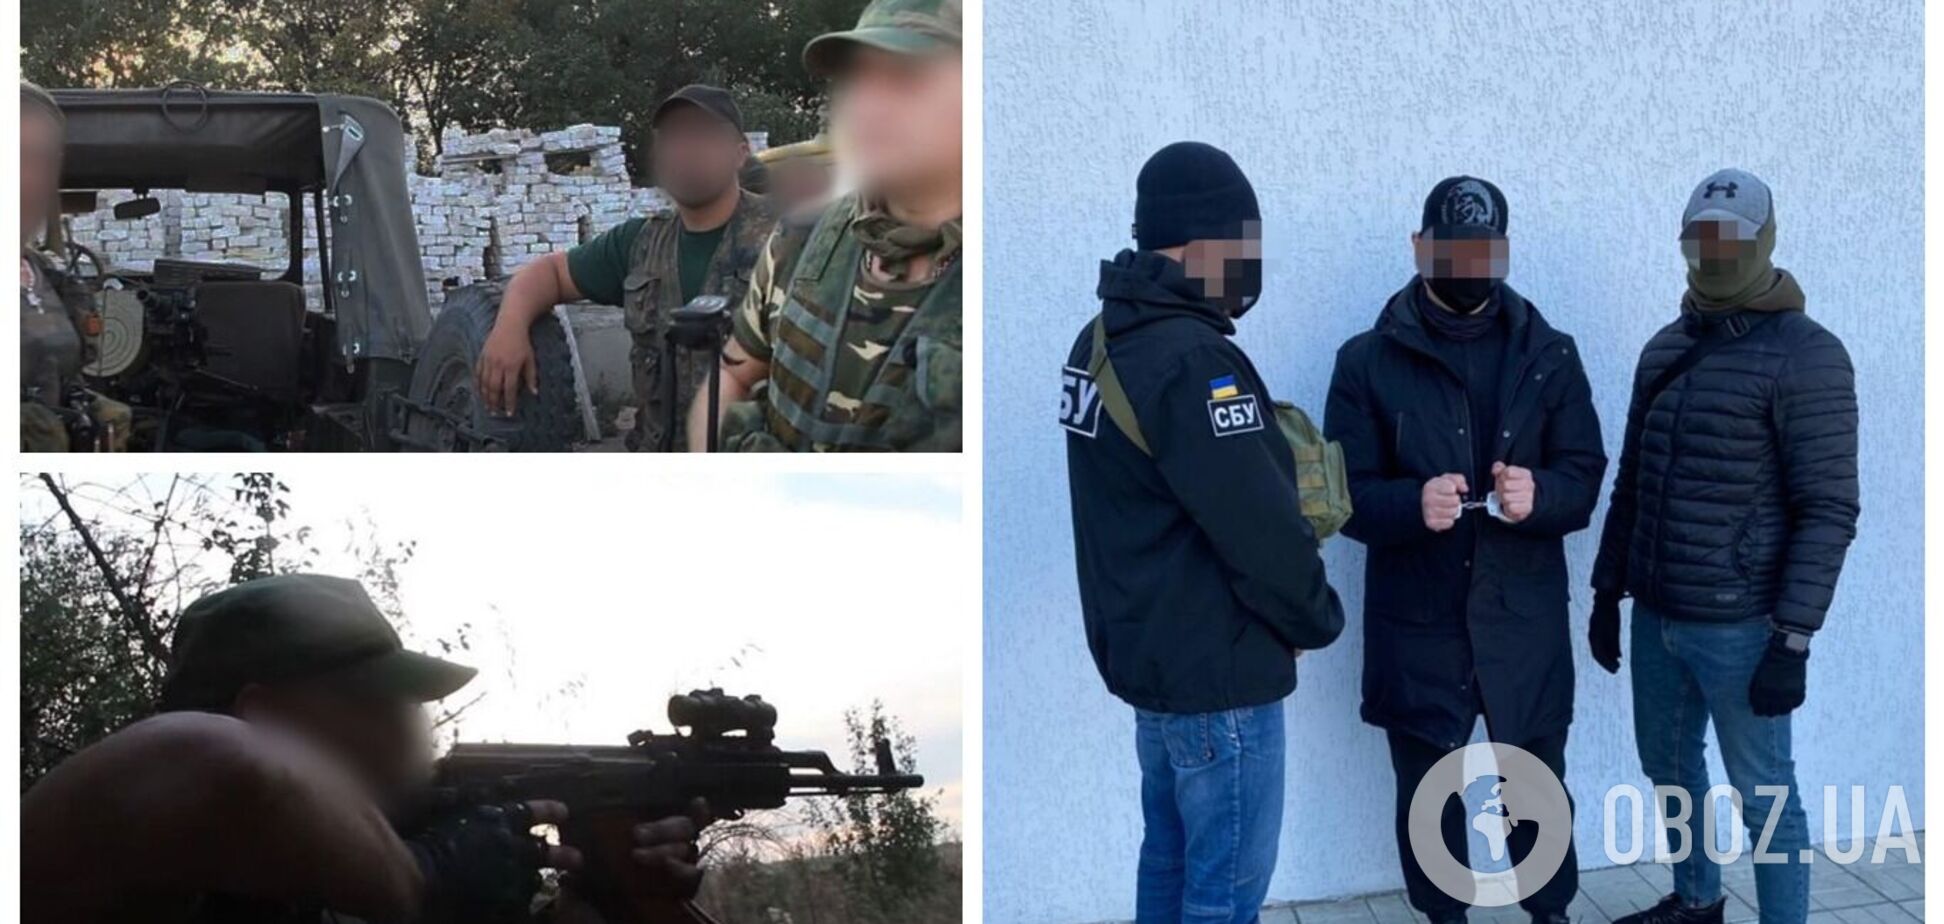 СБУ задержала экс-главаря спецподразделения МГБ 'ЛНР', который участвовал в захвате Луганского аэропорта. Фото